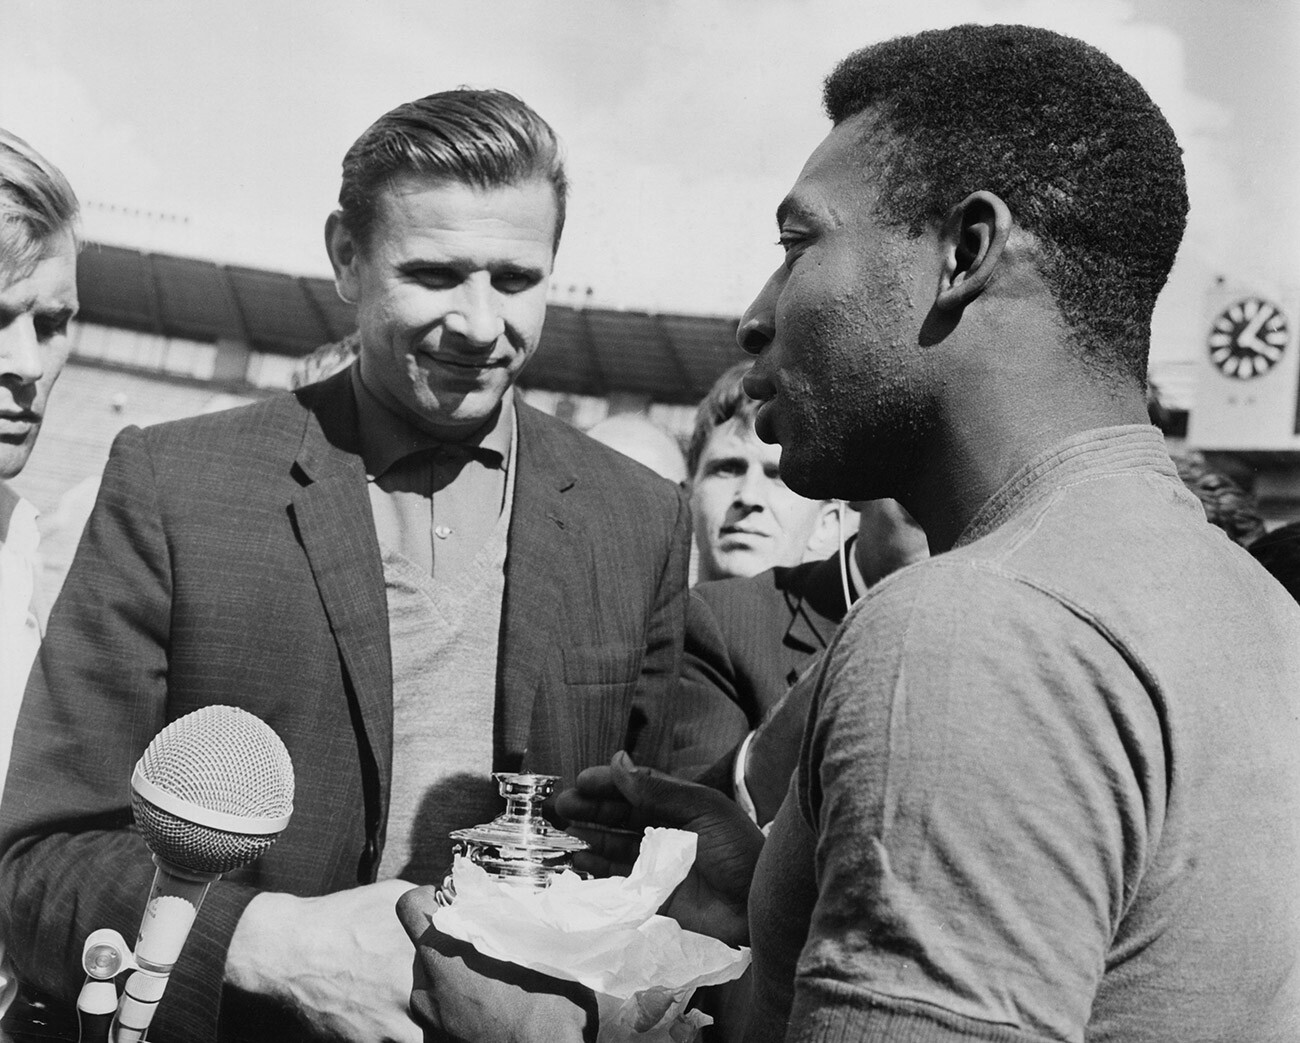 Slavni sovjetski vratar Lev Jašin na Leninovem stadionu podarja spominek Edsonu Arantesu do Nascimentu - Peléju, enemu od igralcev brazilske nogometne ekipe 